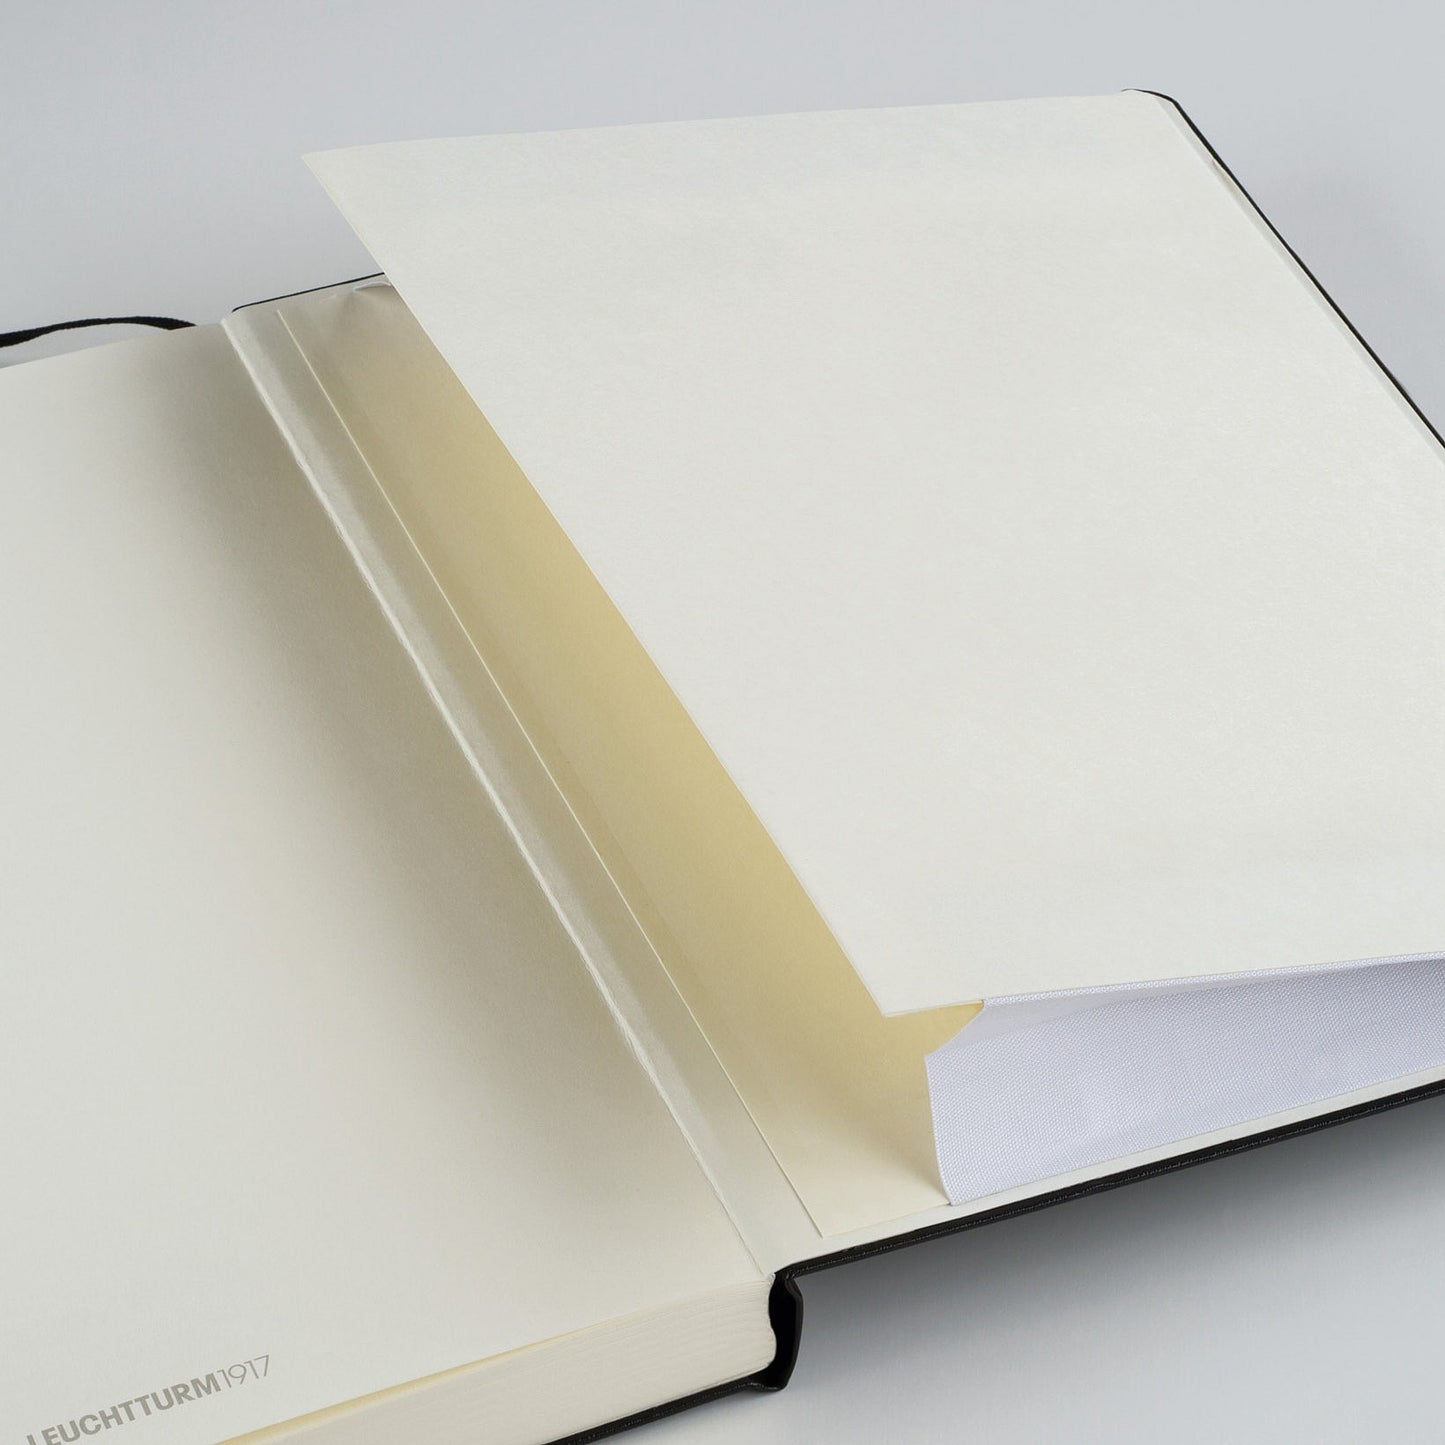 Leuchtturm1917 A5 Medium Softcover Notebook - Sage / Dotted